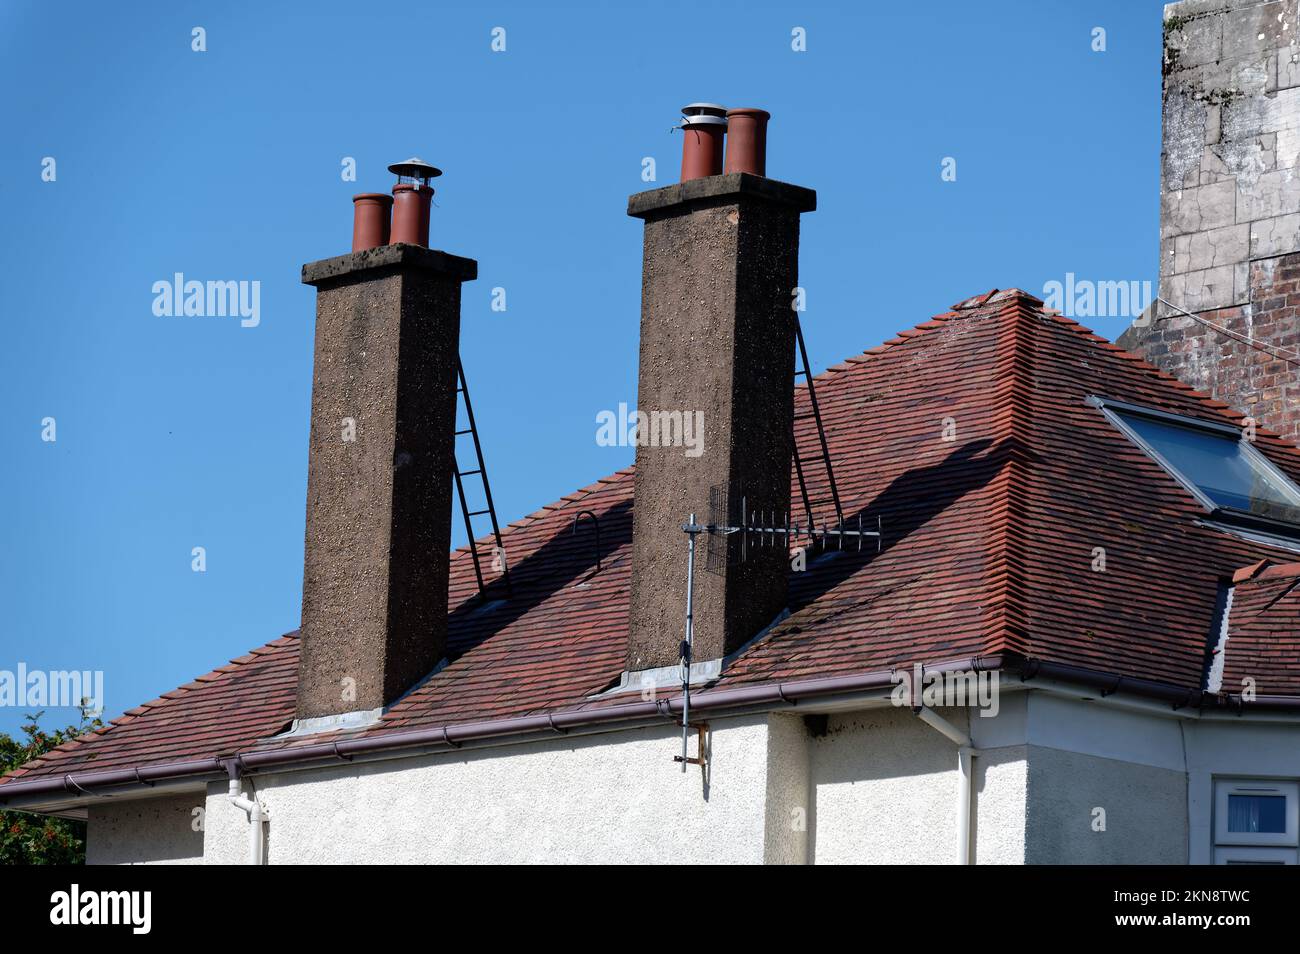 Pentole camino sul tetto della vecchia casa vittoriana Foto Stock